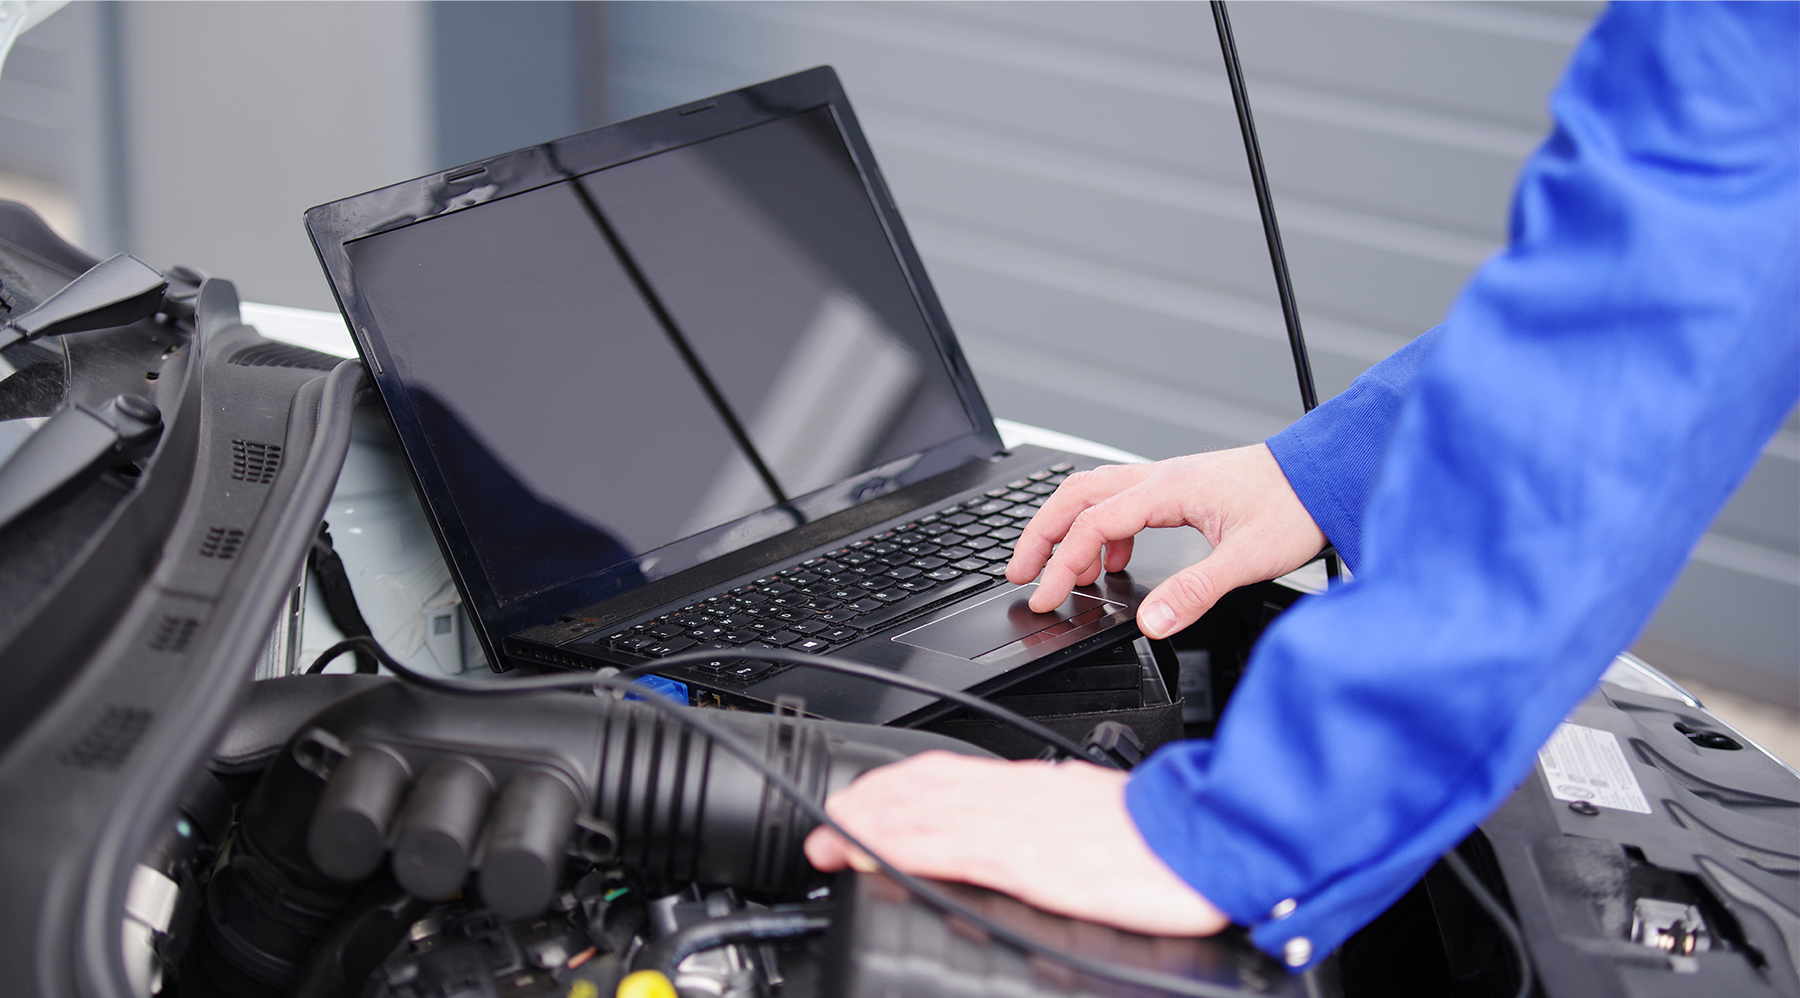 Kfz-Meister arbeiten selbst praktisch in der Werkstatt mit und misst mit seinem Laptop die Werte vom Fahrzeug ab.